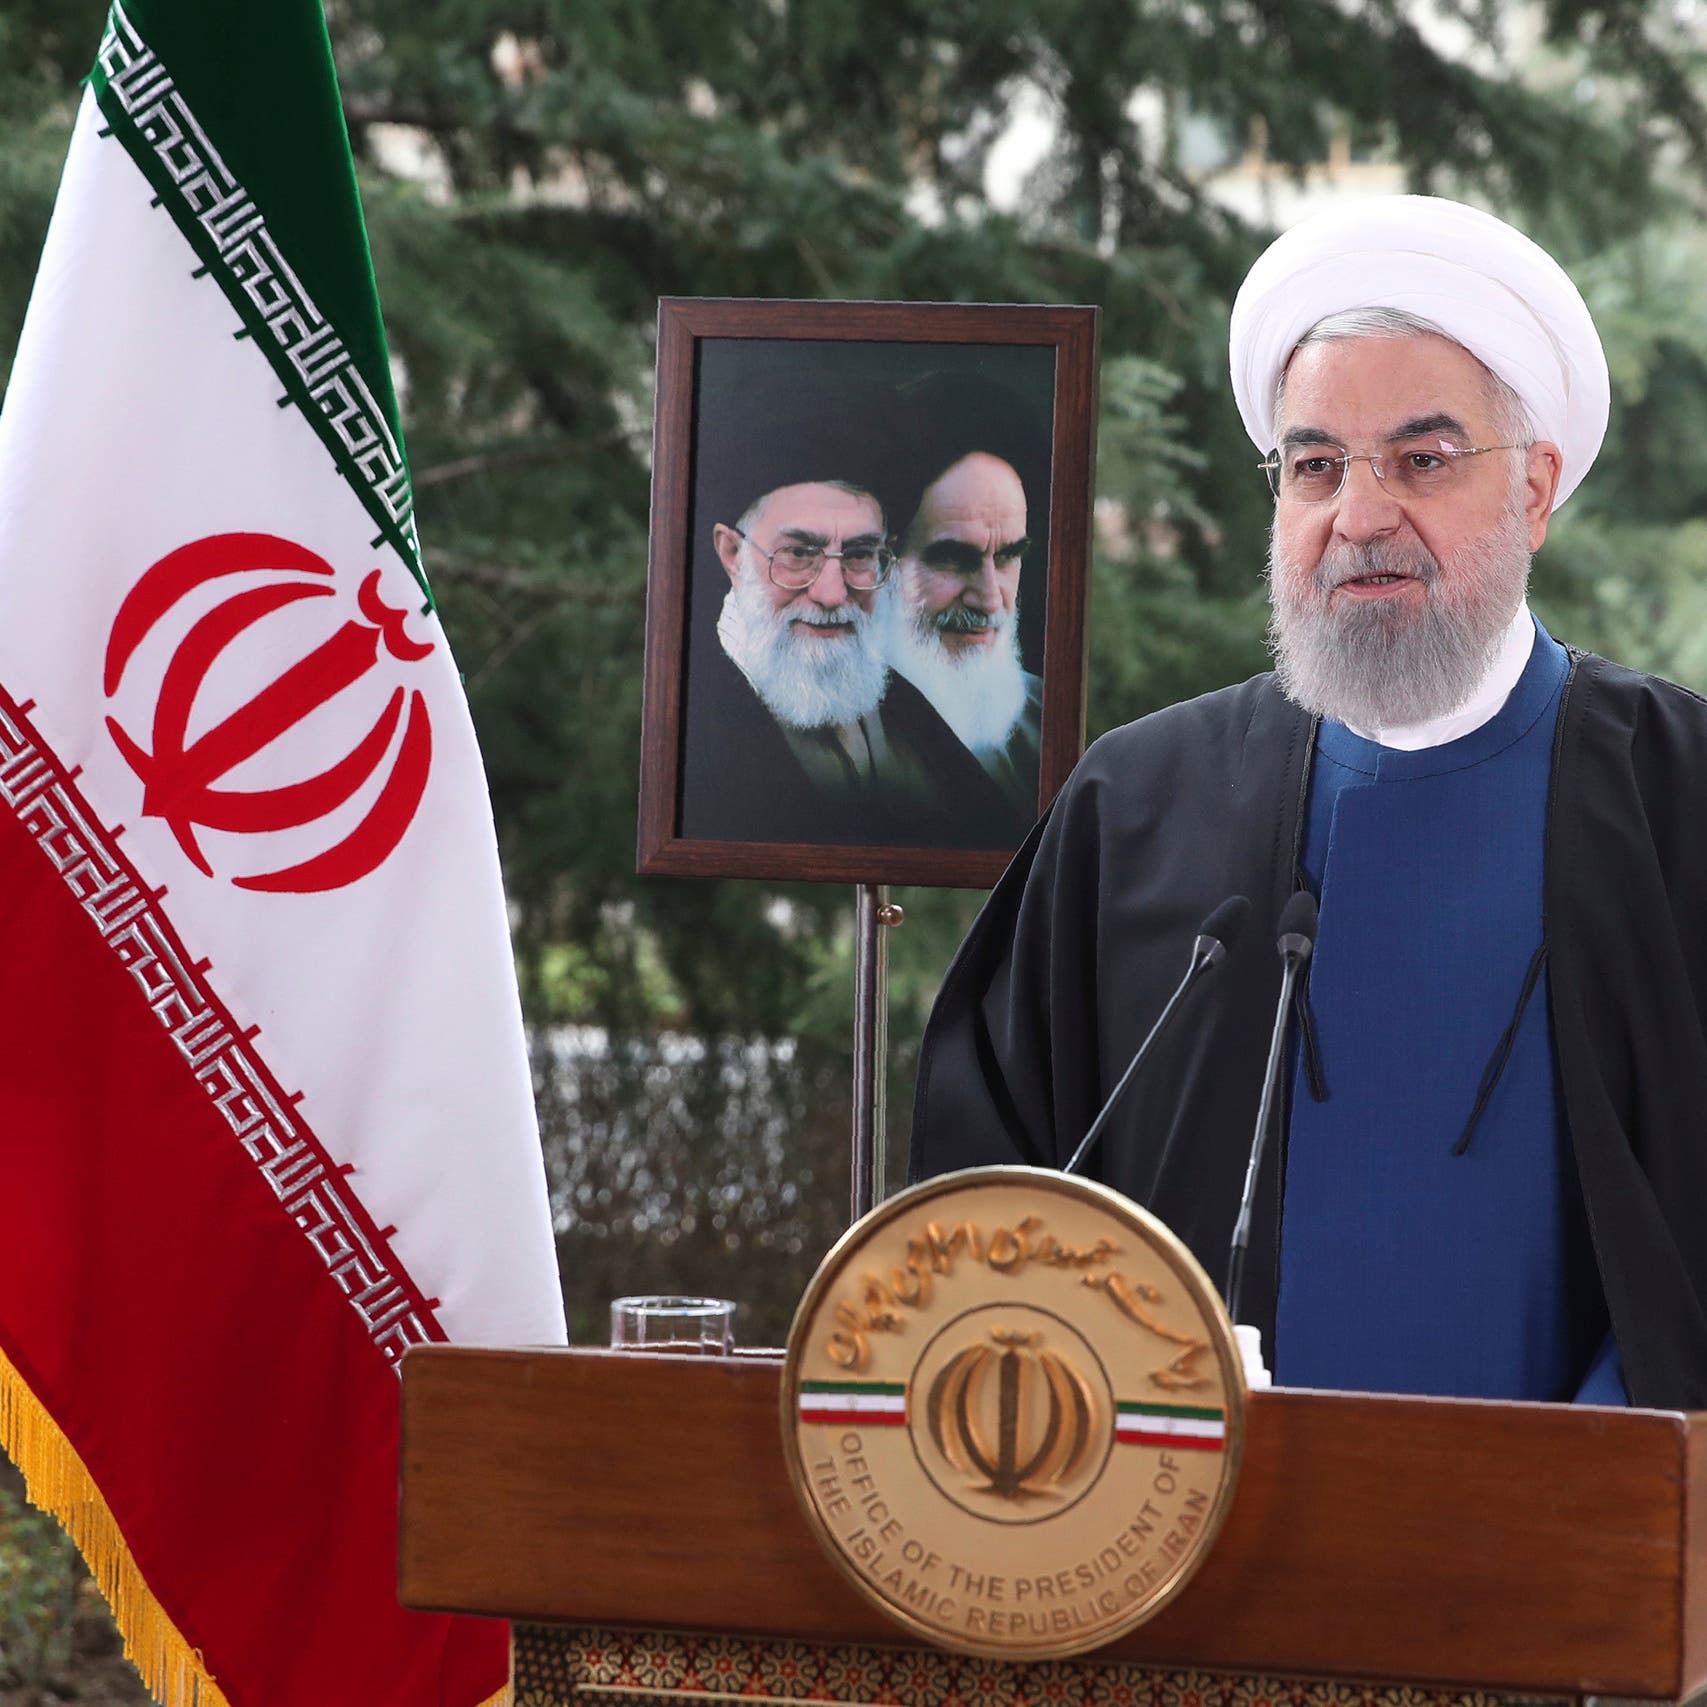 روحاني: سنفعل كل ما بوسعنا لتفعيل الاتفاق النووي